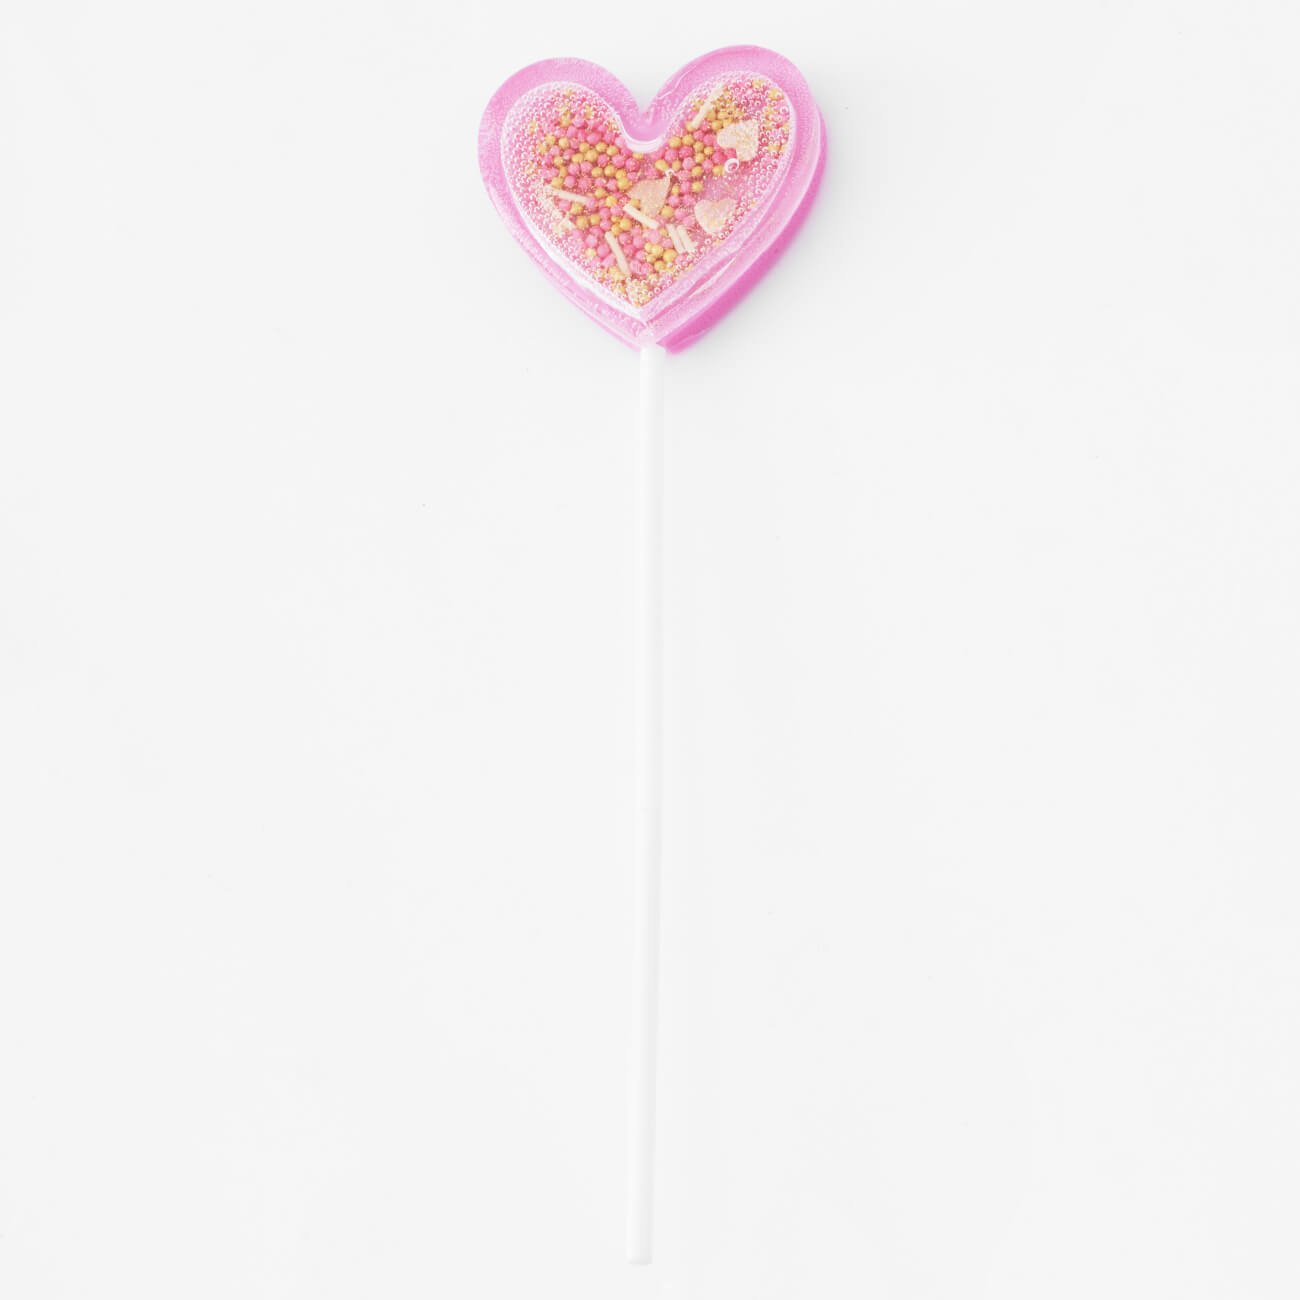 Леденец, 30 гр, погремушка, на палочке, изомальт, розовый, Сердце, Heart шар погремушка сизалевый с перьями 4 5 см розовый